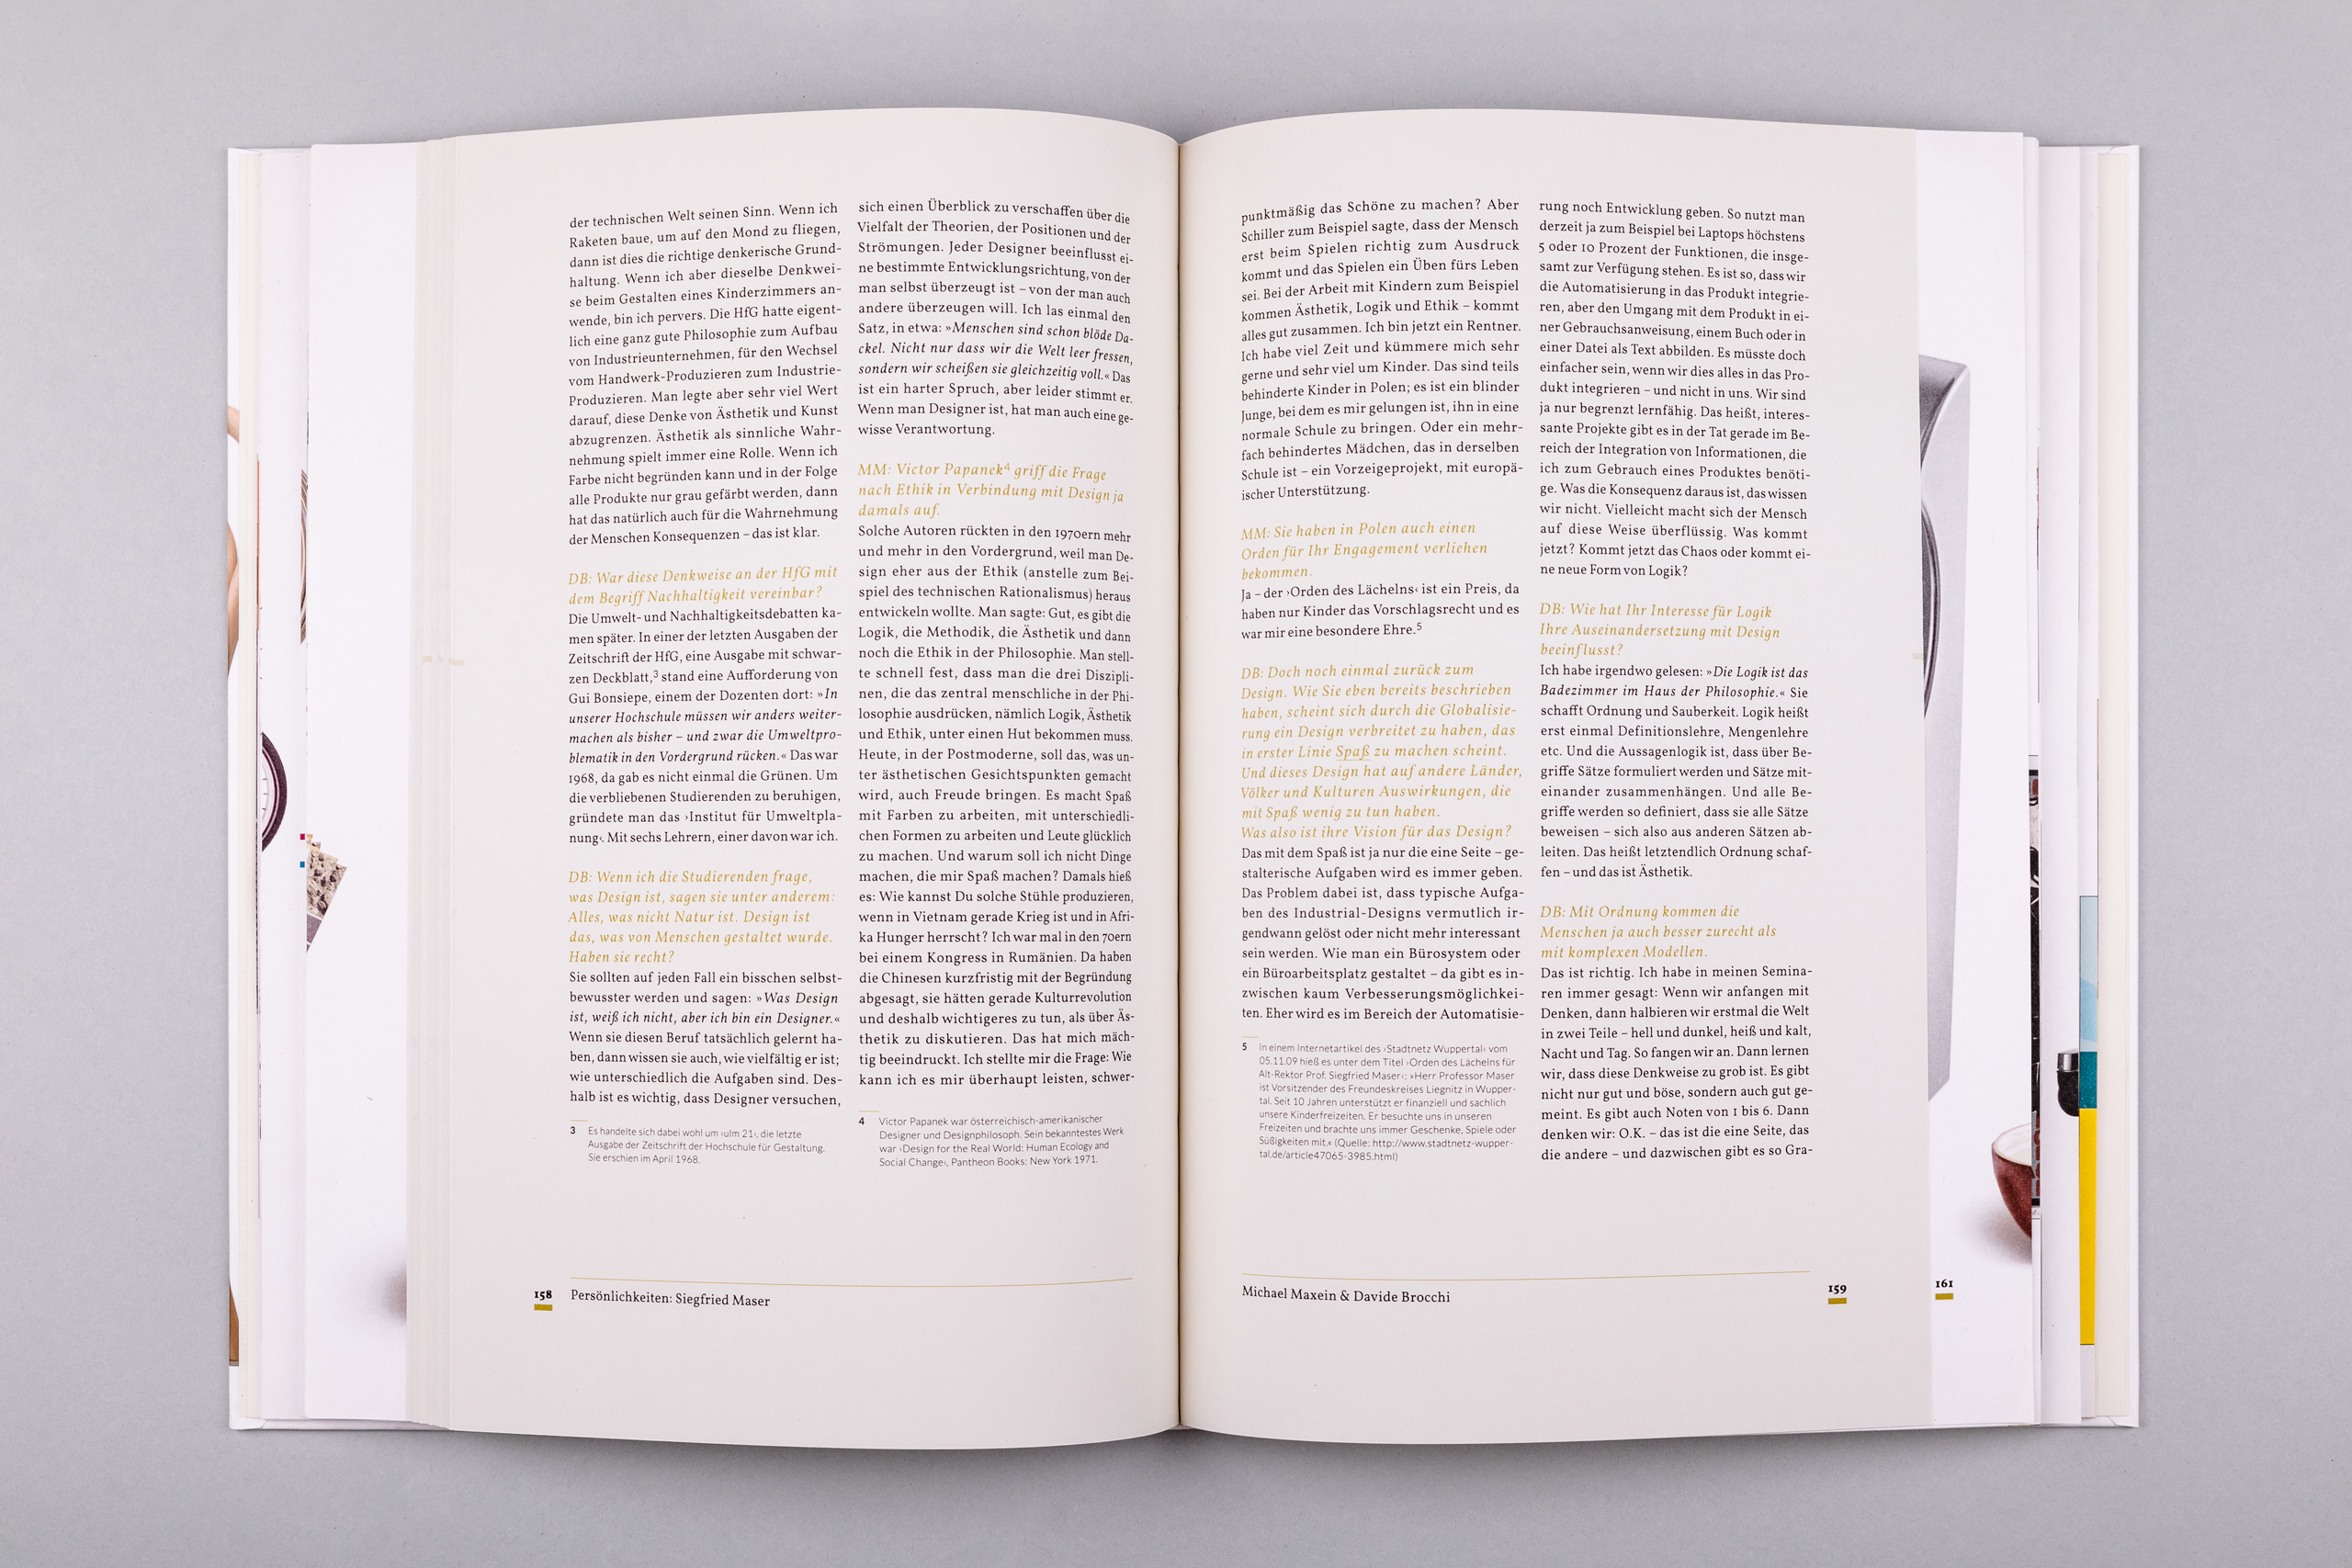 Büro Gestalten: Die Geschichte de nachhaltigen Designs (Buch, S. 158–159)